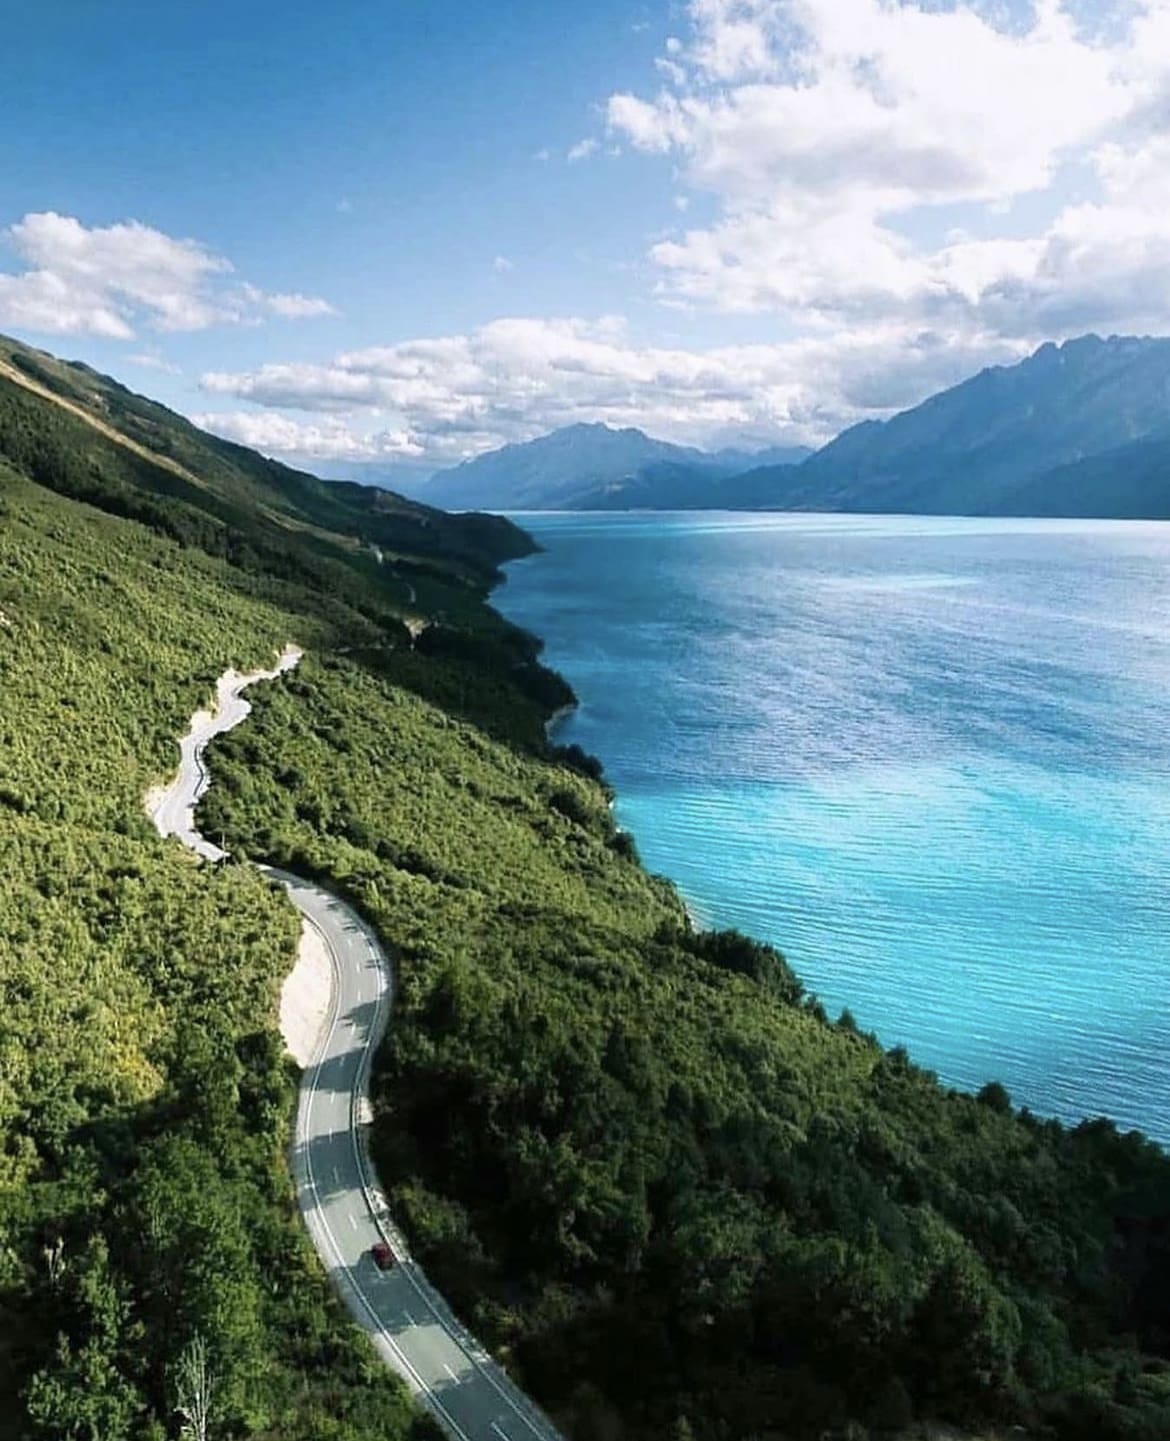 Roadside scenery in New Zealand